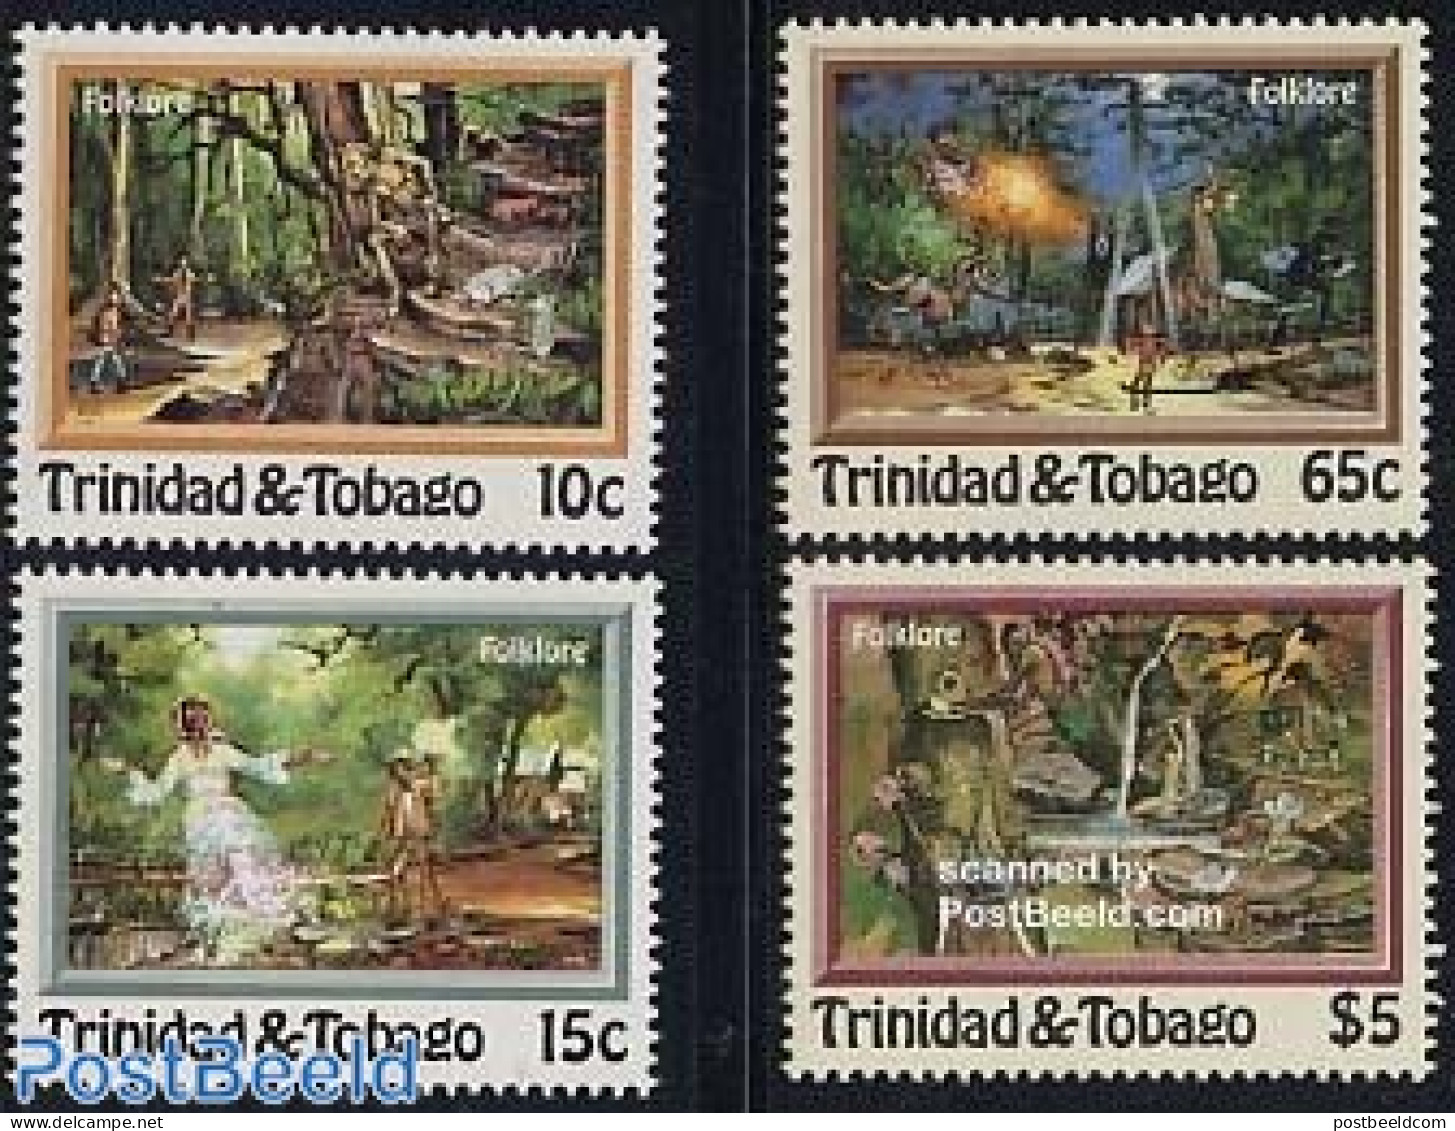 Trinidad & Tobago 1982 Folklore, Tales 4v, Mint NH, Art - Fairytales - Märchen, Sagen & Legenden